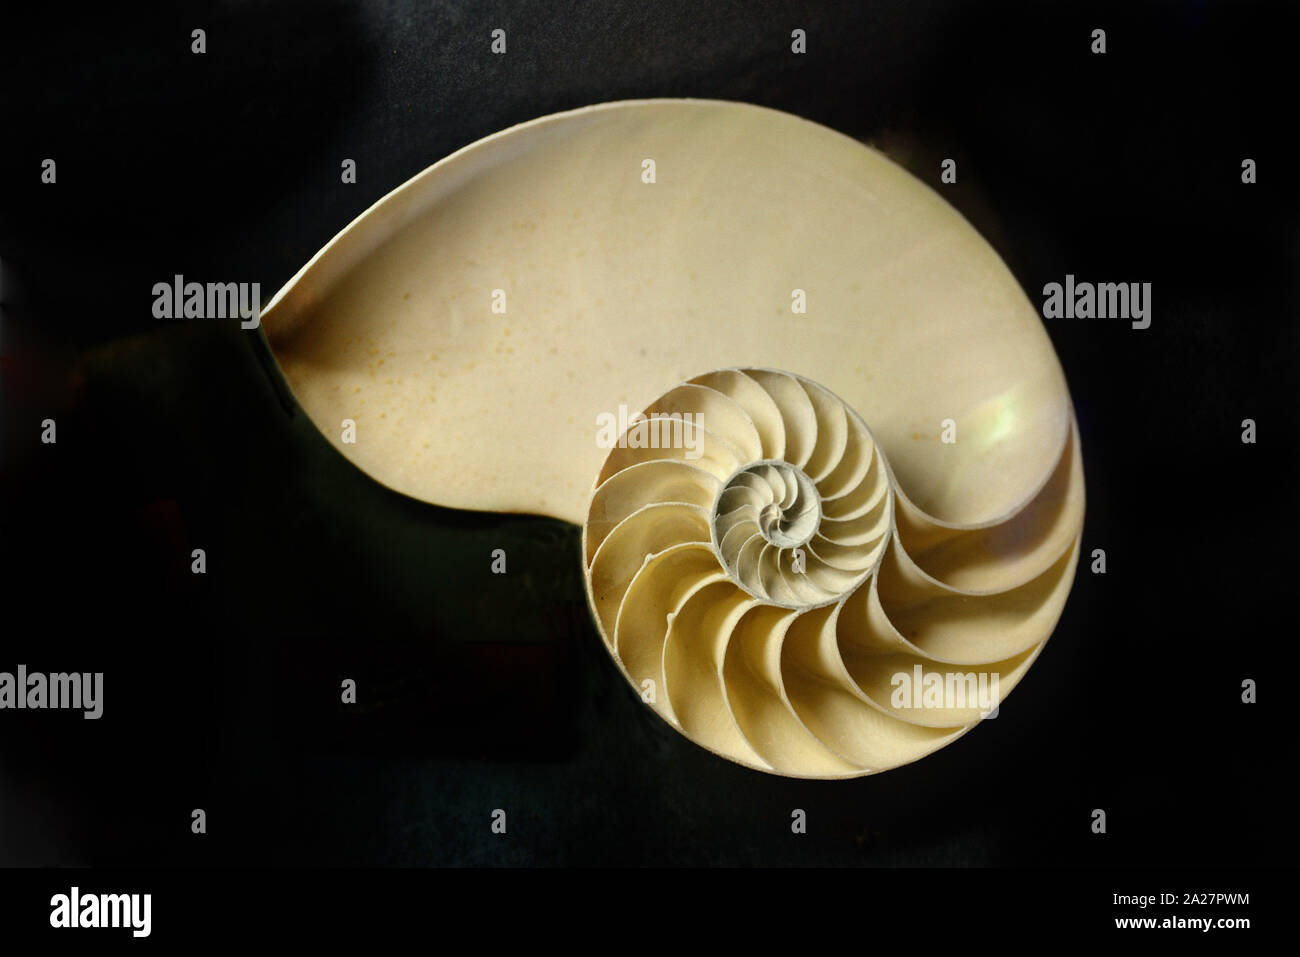 Tagliare il guscio di Chambered Nautilus Nautilus pompilio, mostrando spirale equiangolare a spirale o a spirale logaritmica, dalla regione Indo-pacifico Foto Stock